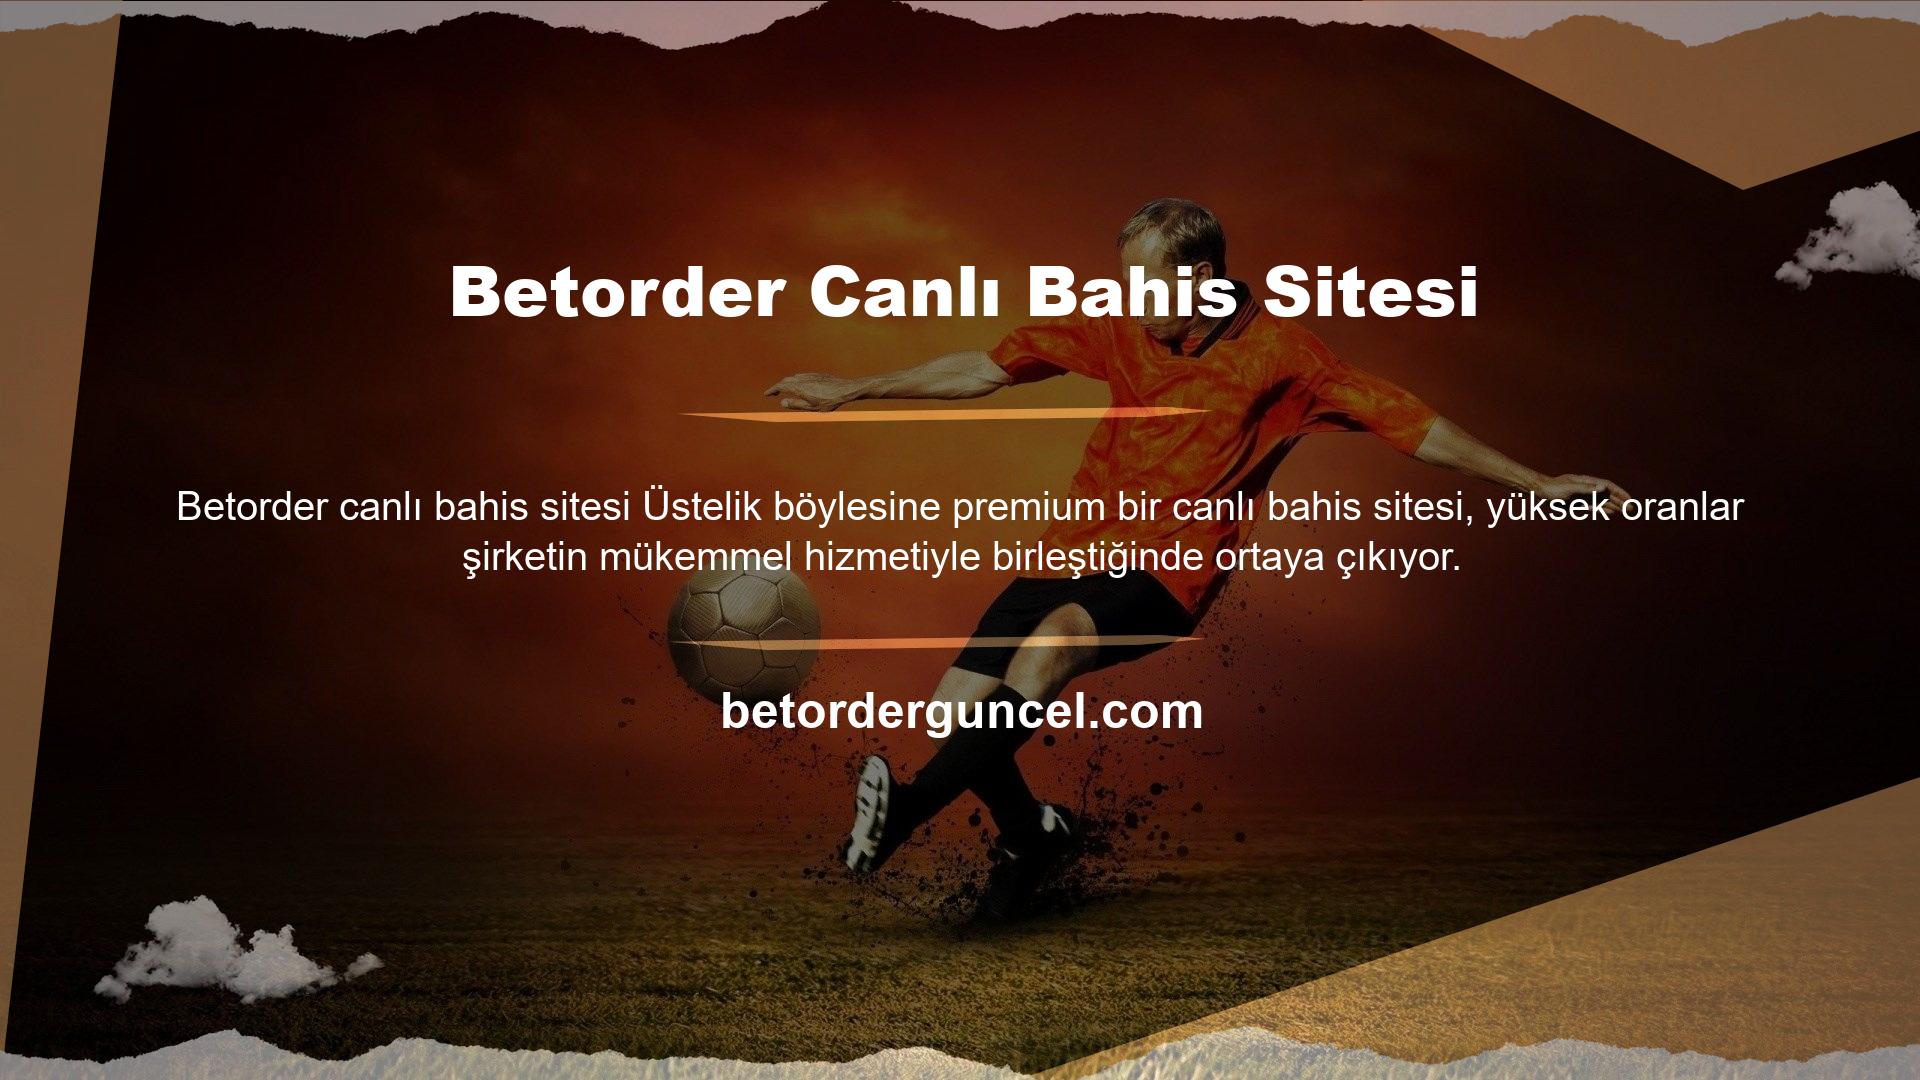 Betorder sitesinin sunduğu oyunlar Türk oyuncuların ilgisini çekecek